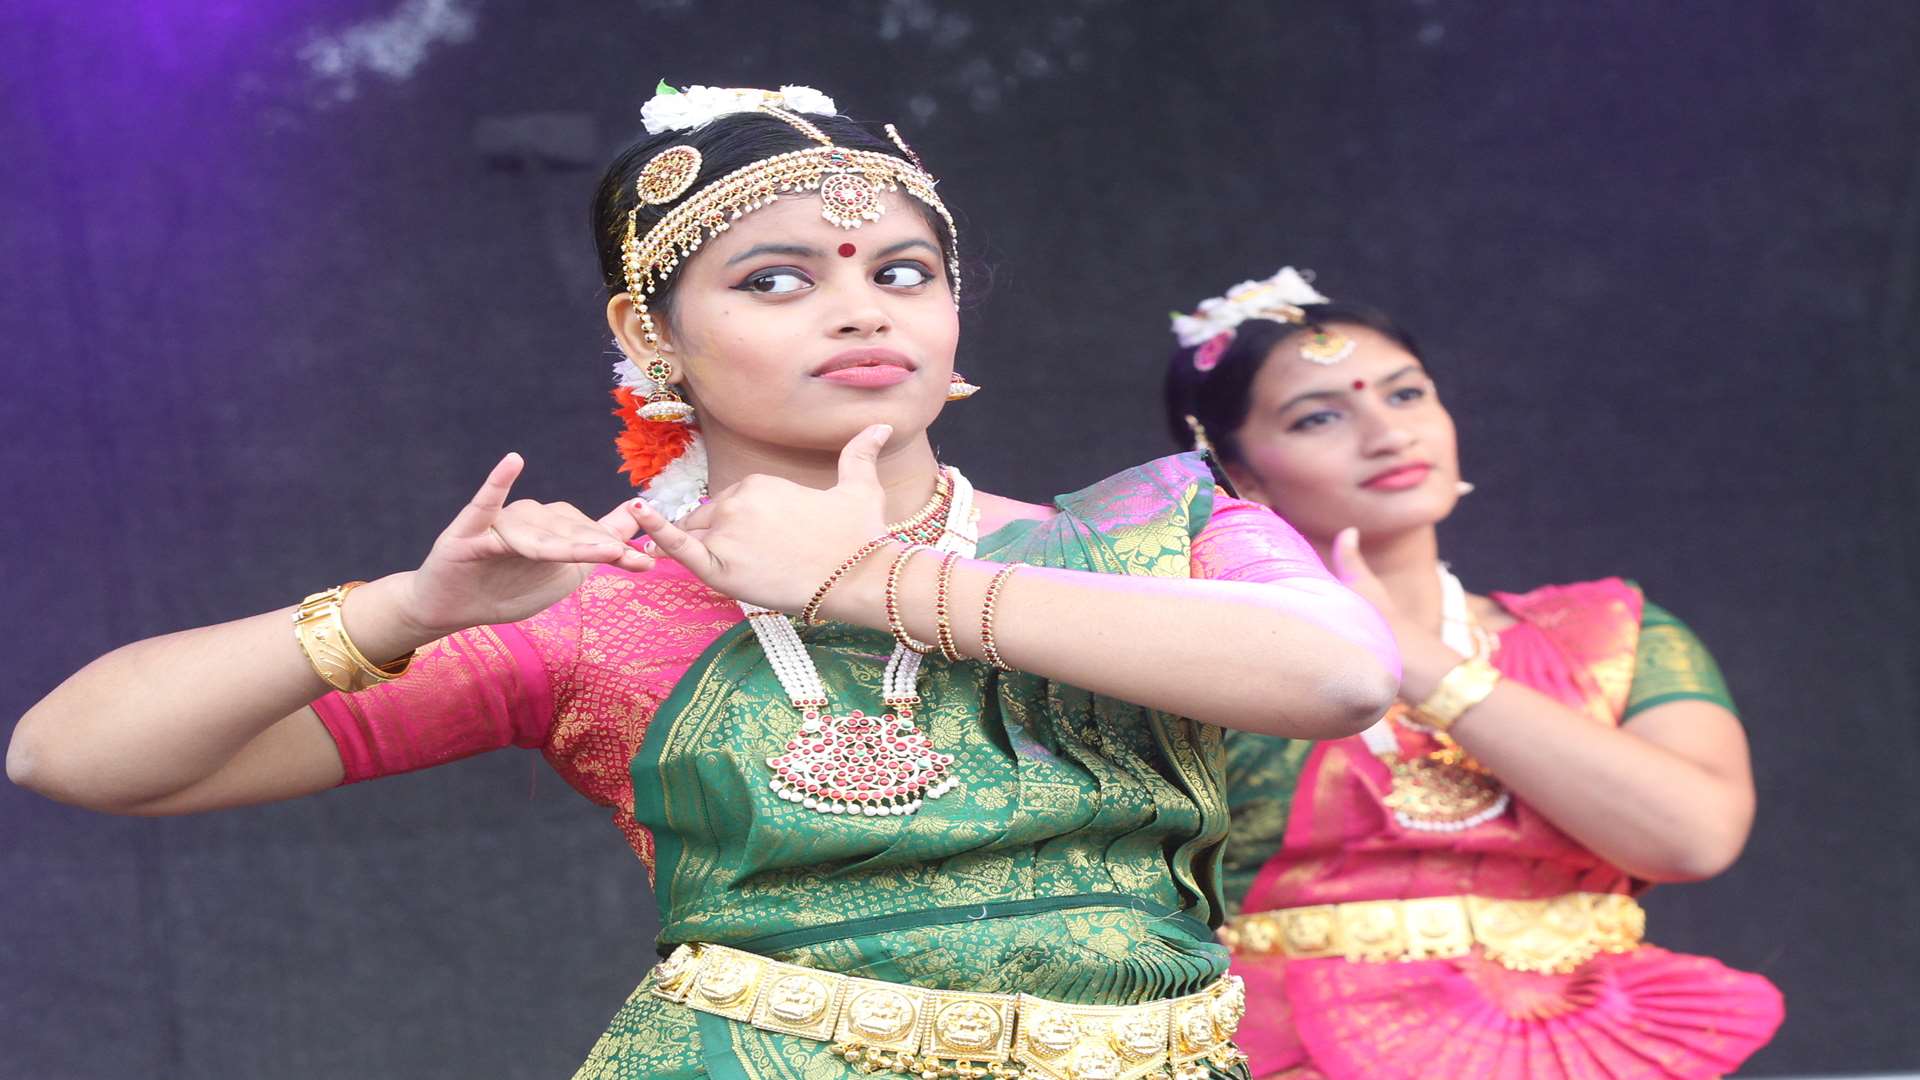 The Kerala Cultural Association